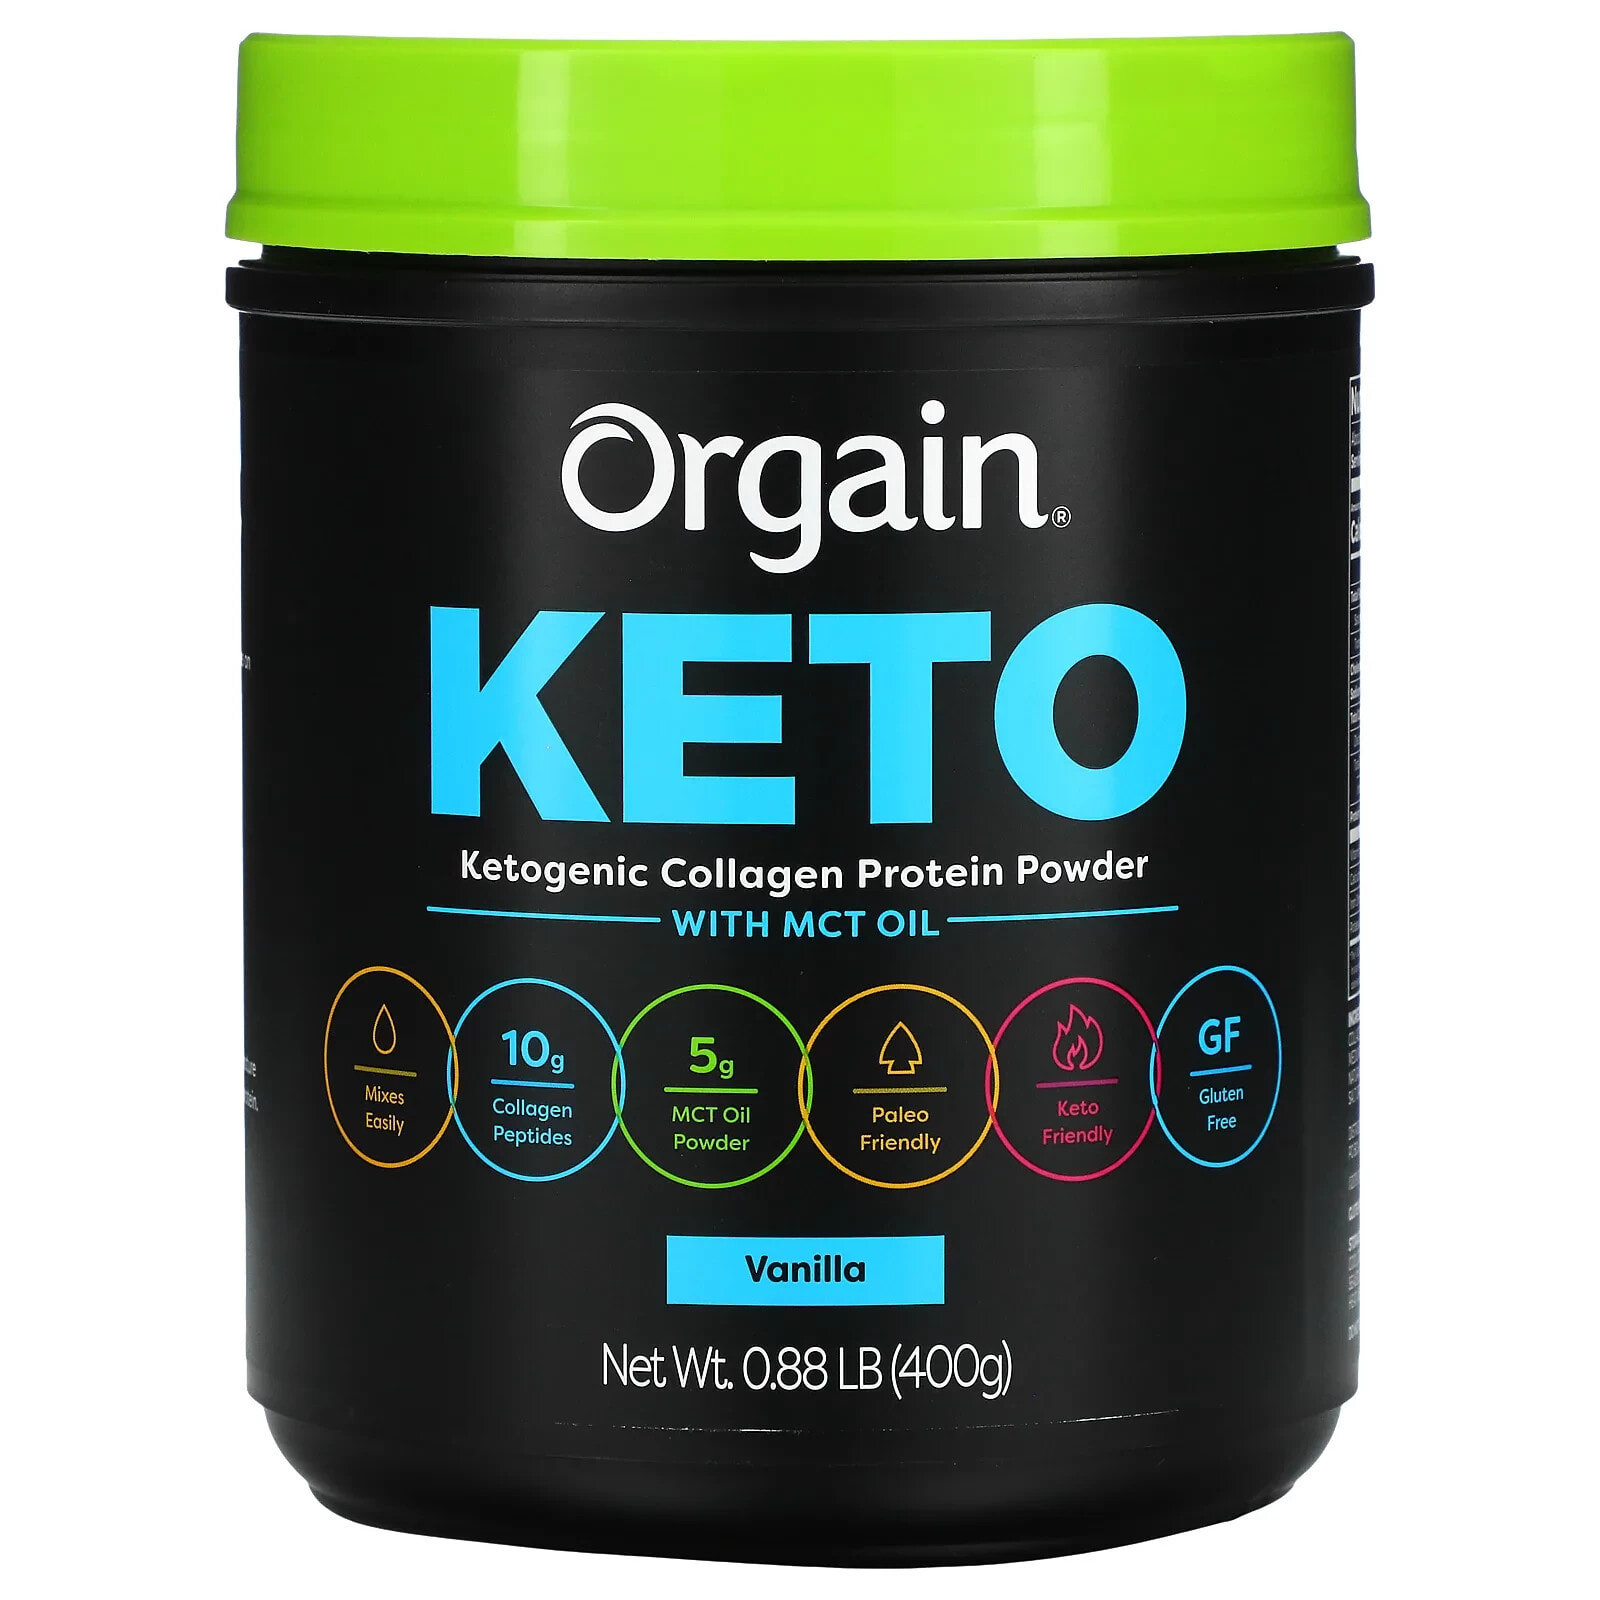 Keto Collagen Protein Powder, Vanilla Bean, 14.1 oz (400 g)